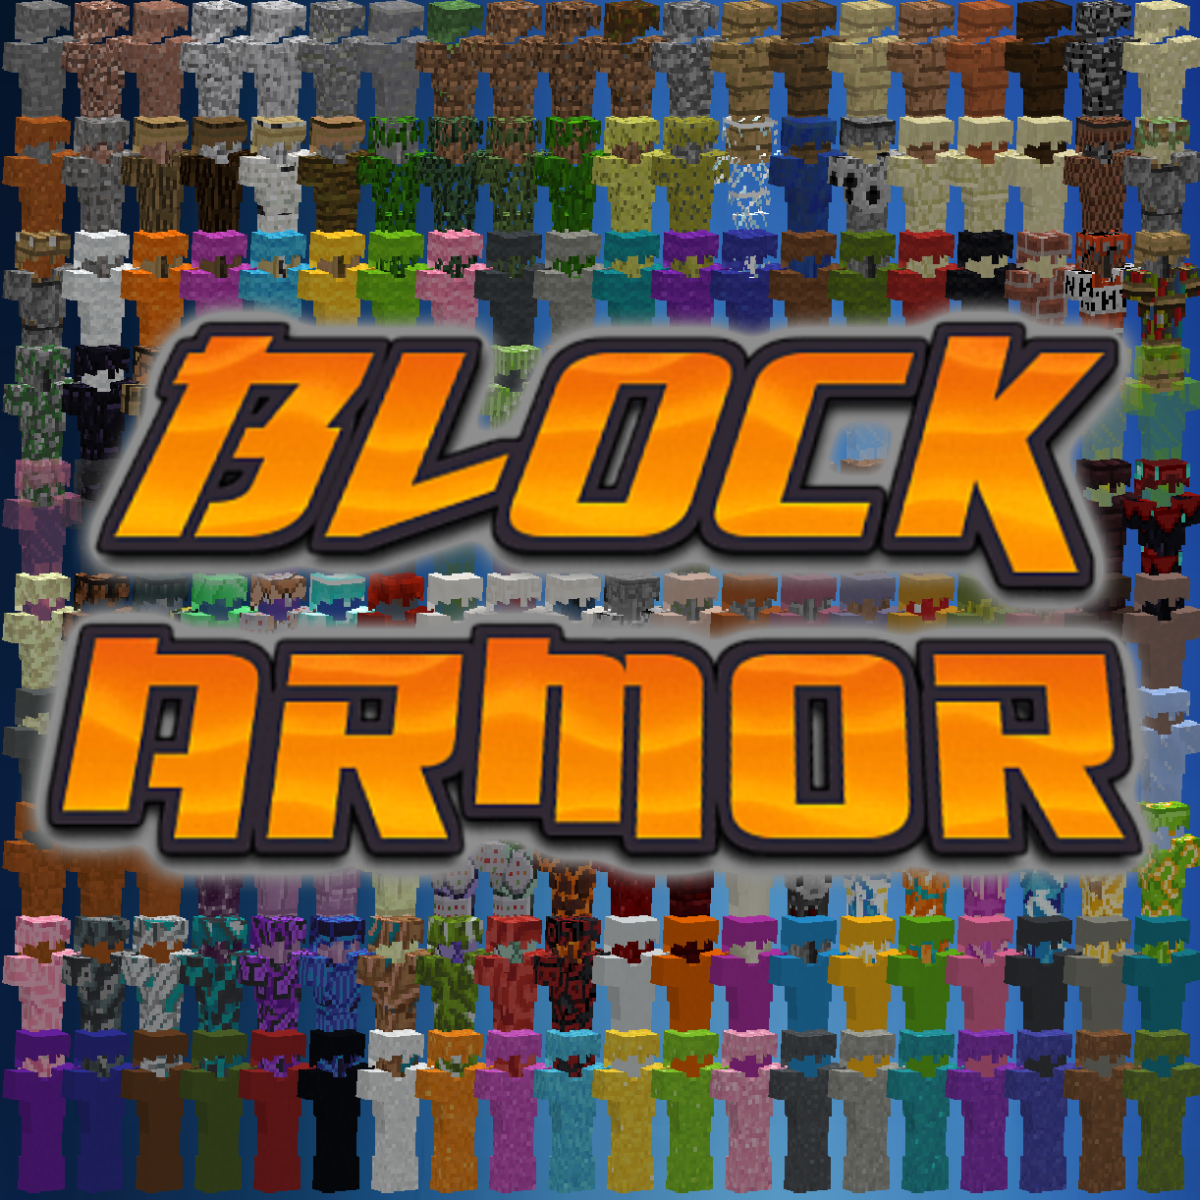 Block Armor Mod - minecraft mods 1.10.2 : Block Armor mod adds